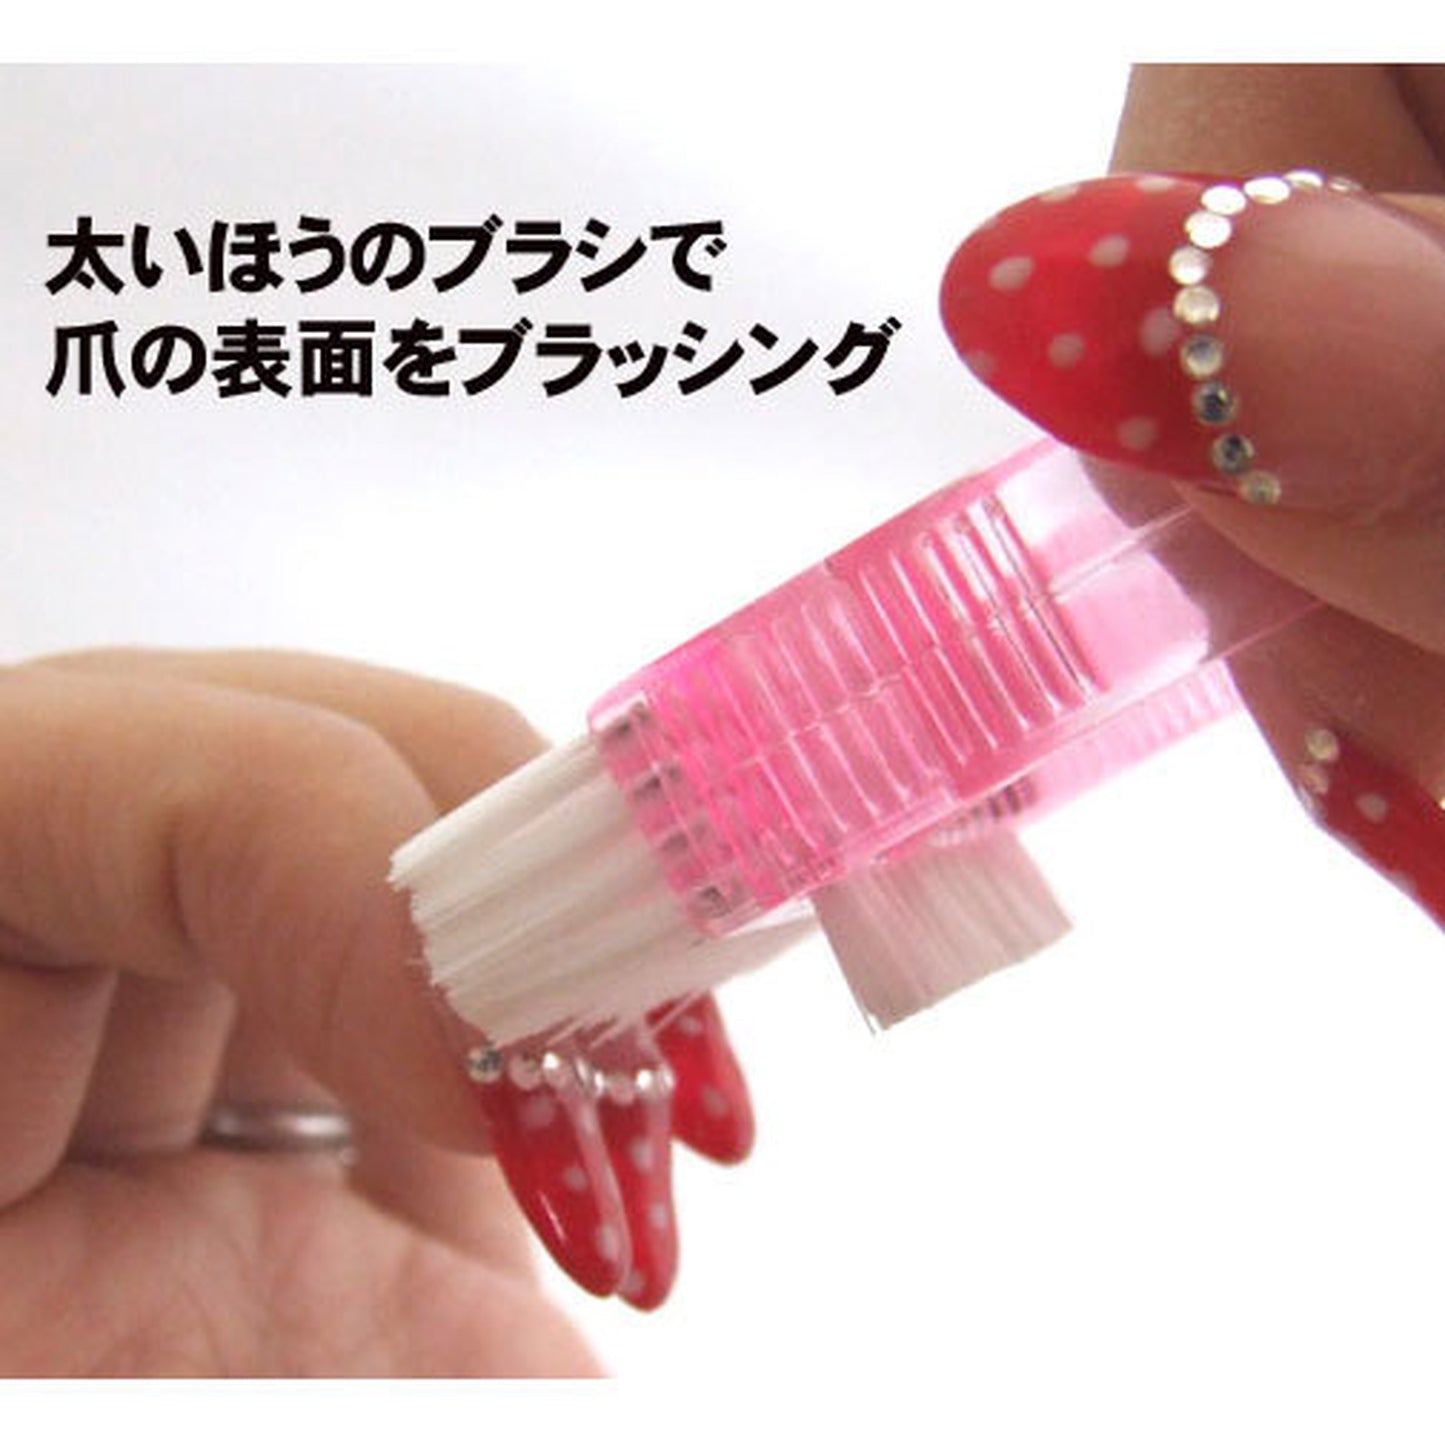 マニキュアブラシmini / 小さくて実用的で可愛いピンクカラー